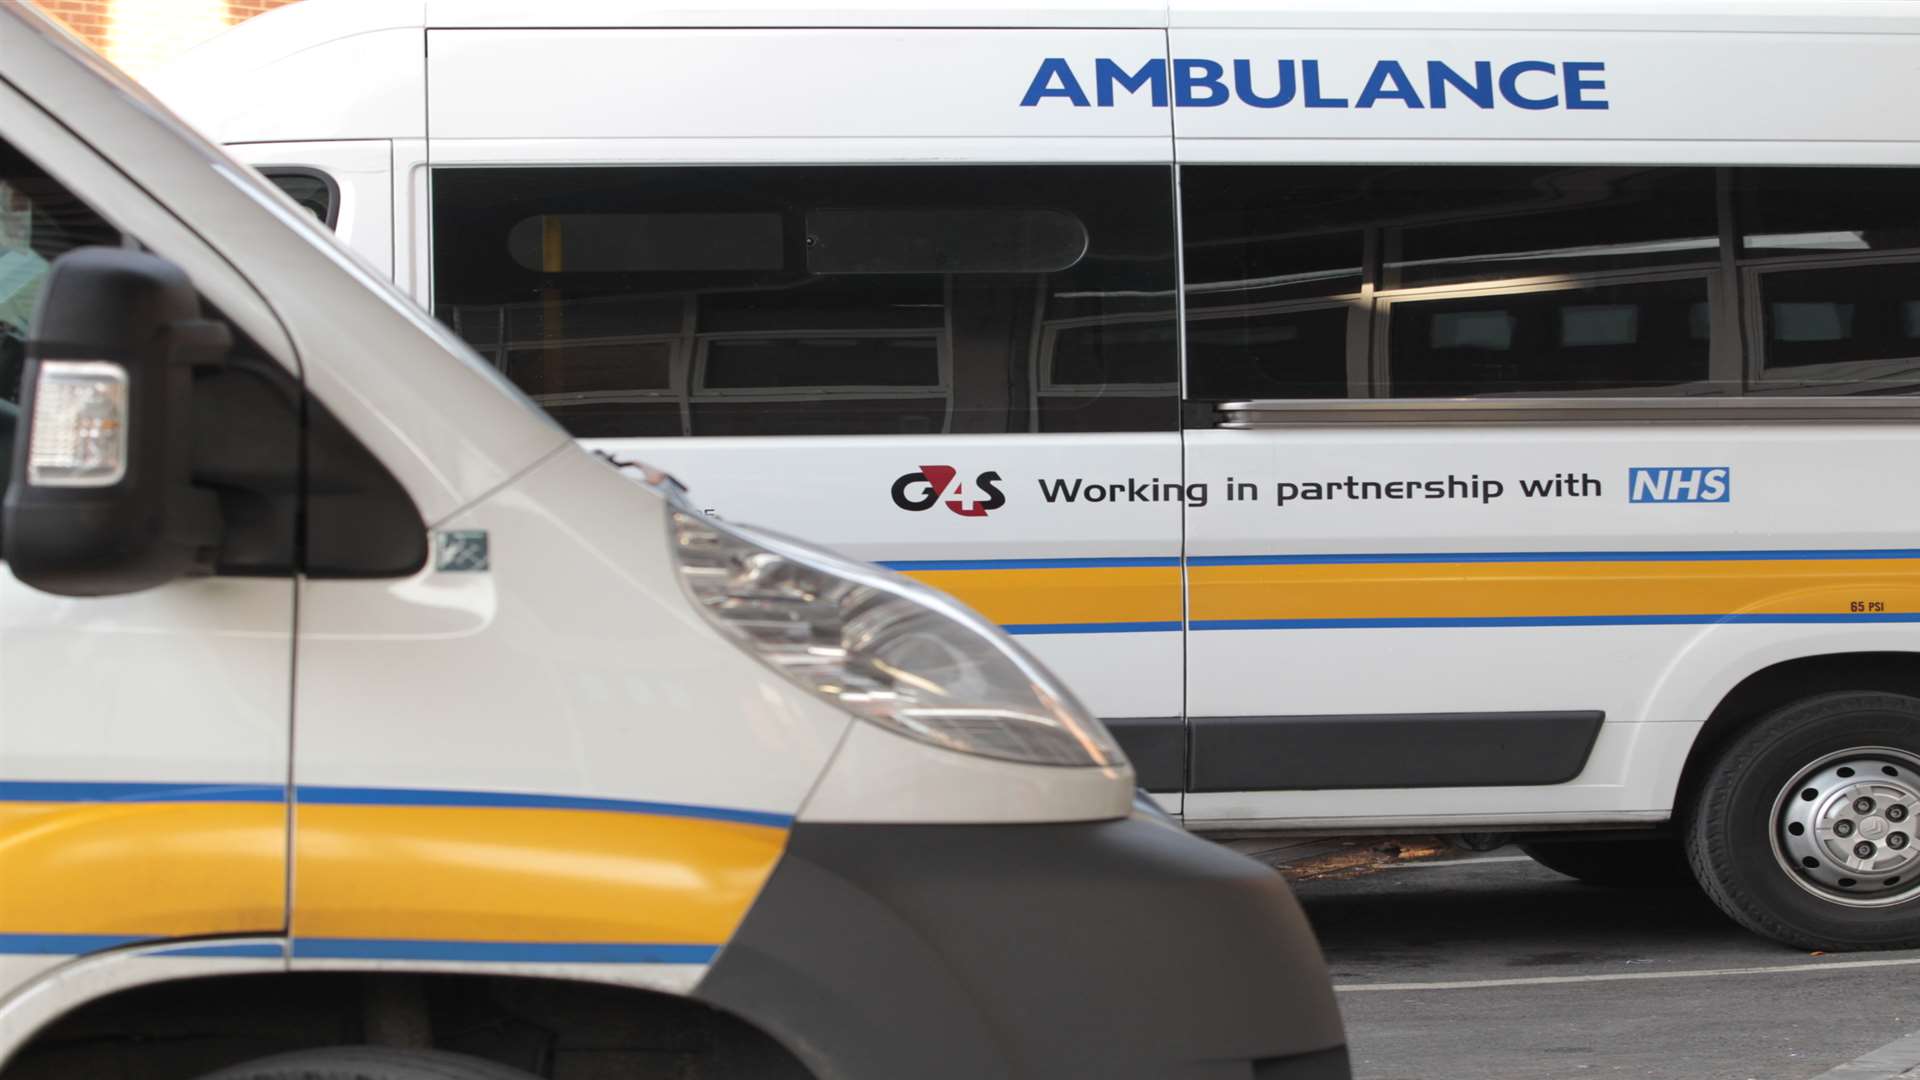 G4S patient transport services